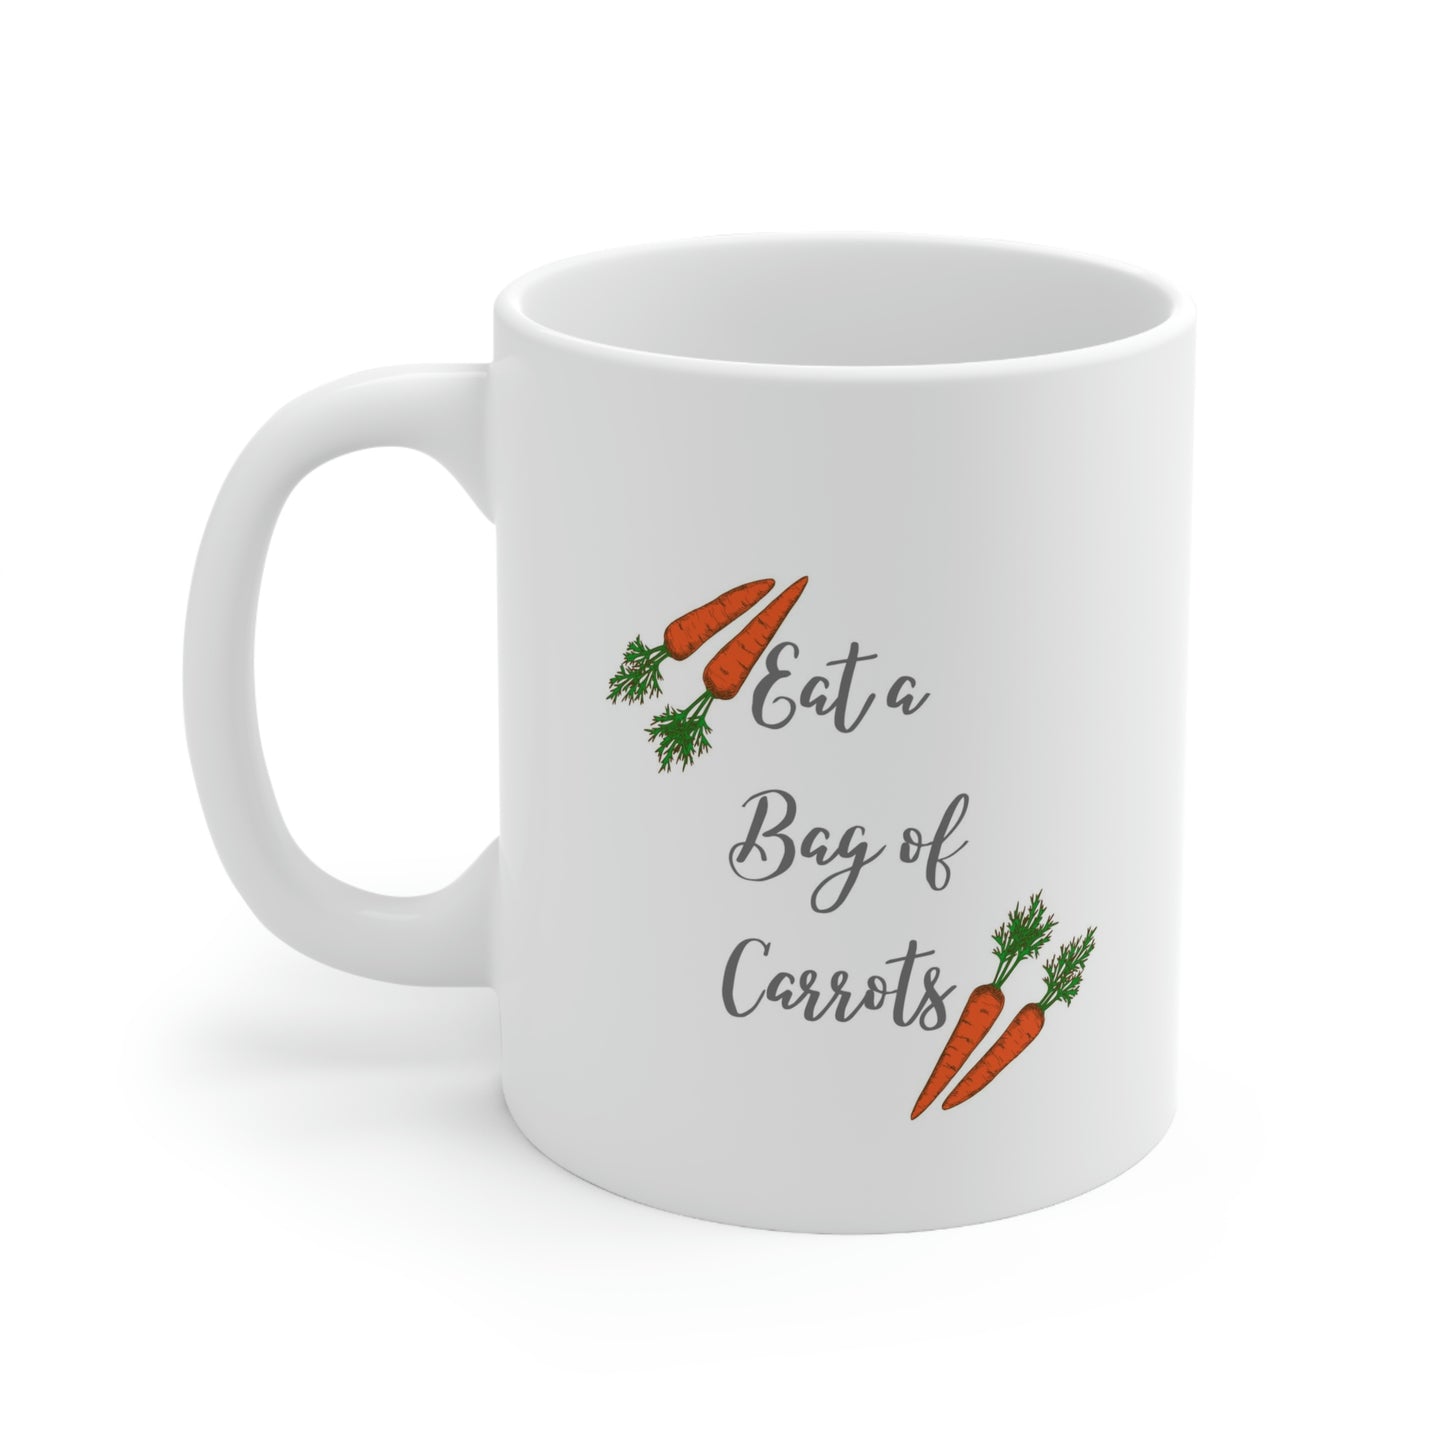 Eat a bag of Carrots Ceramic Mug 11oz